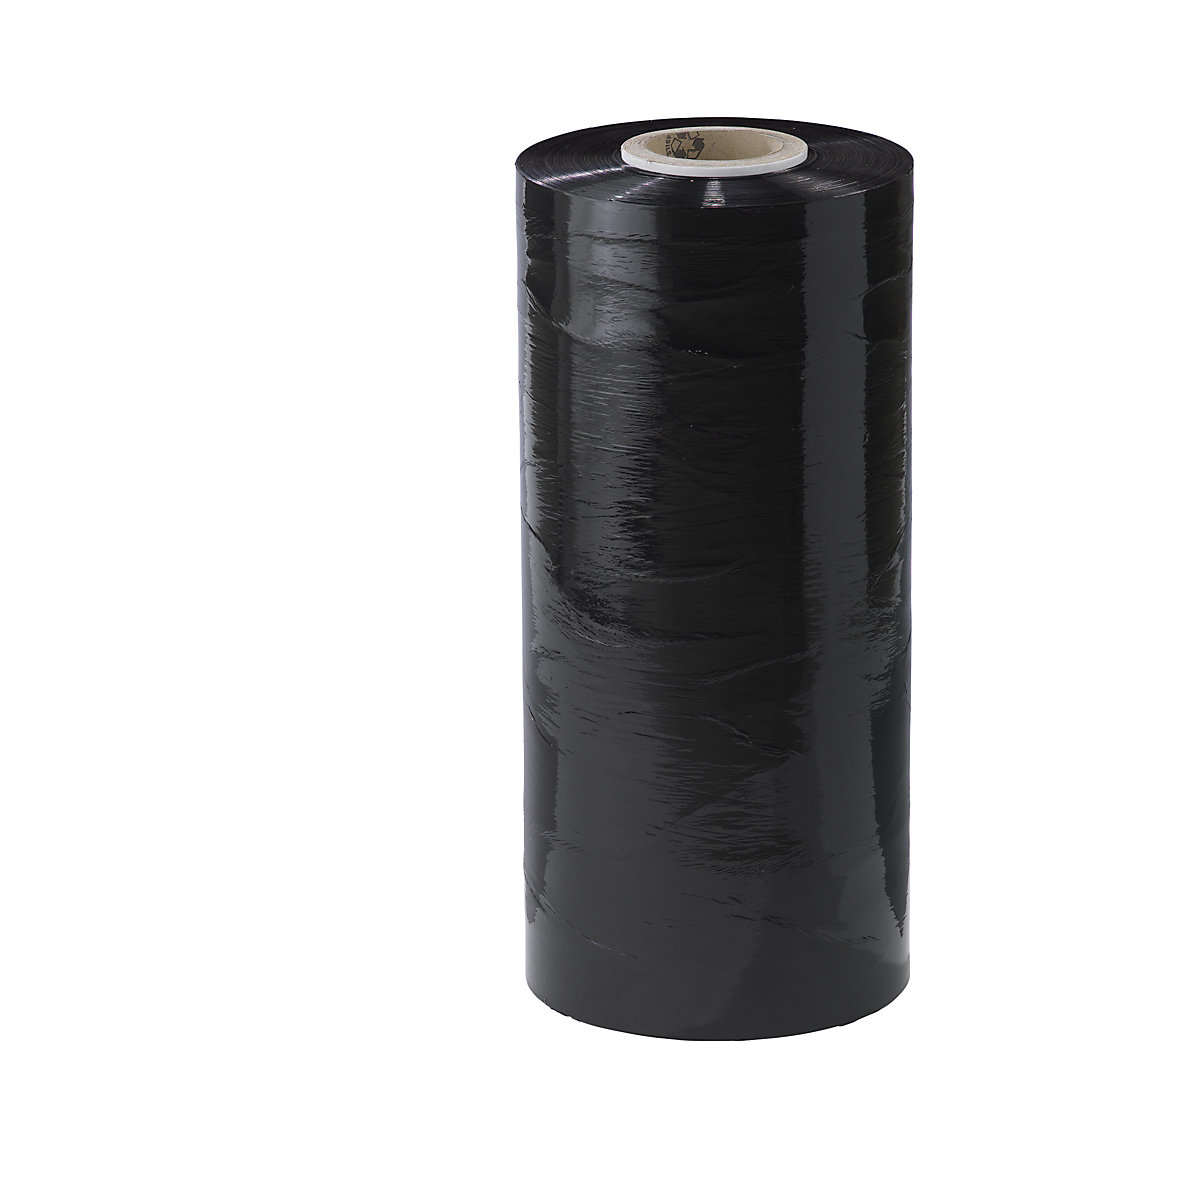 Folie flexibilă PE pentru utilaje, lățime 500 mm, minimum 1 amb., grosime folie 23 µm, amb. 45 buc., neagră